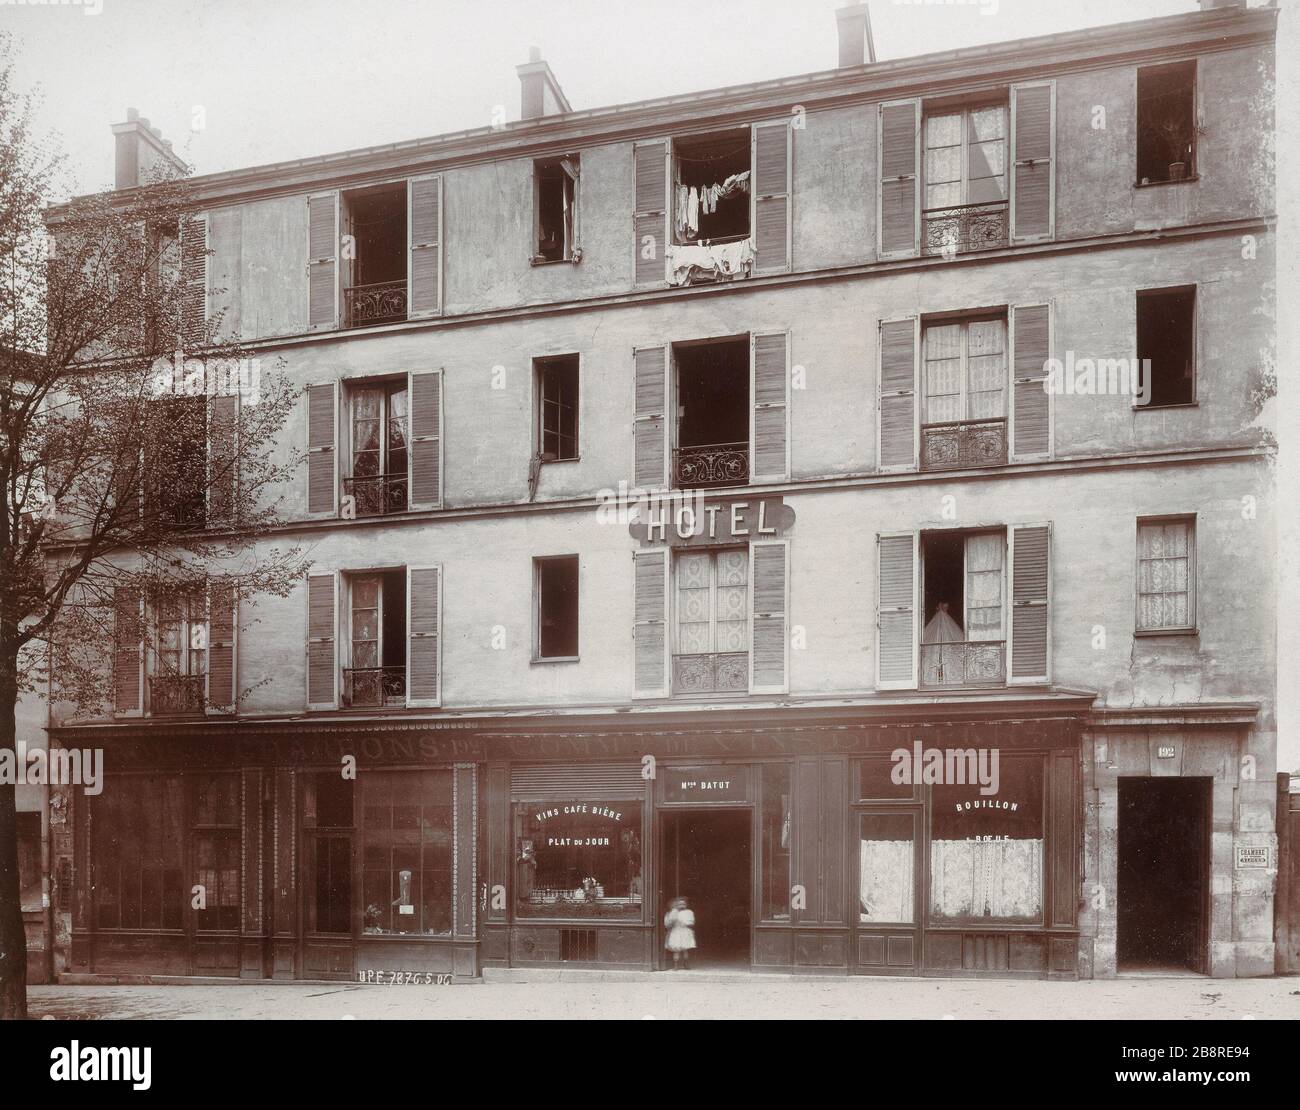 192 RUE CHAMPIONNET Hôtel, 192, rue Championnet. Paris (XVIIIème arr.). Union photographique française, mai 1906. Paris, musée Carnavalet. Banque D'Images